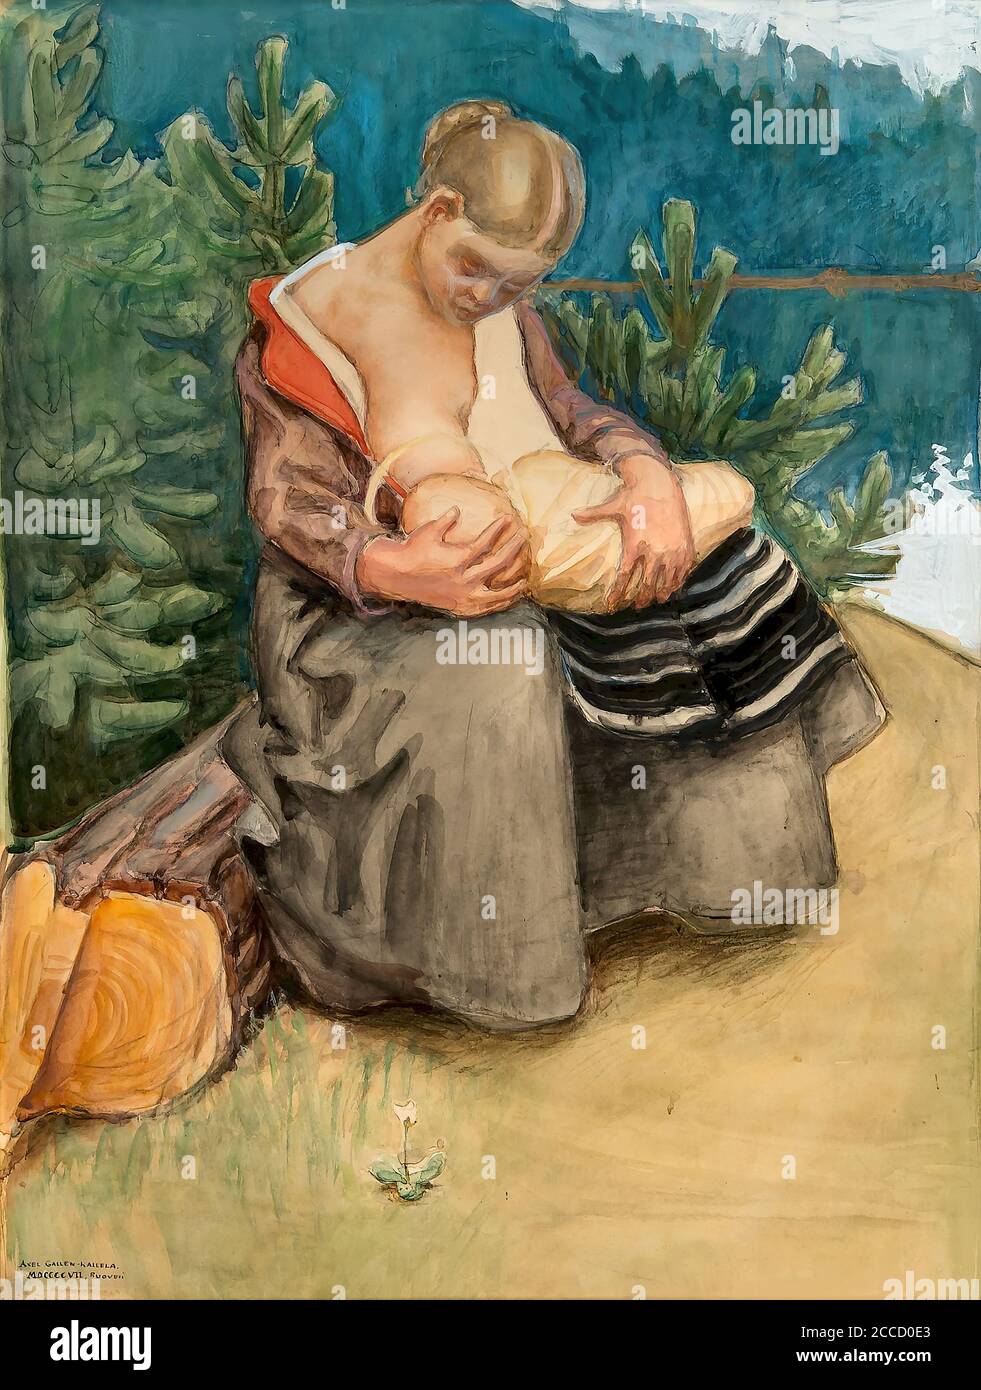 Gallen-Kallela Akseli - Mother and Child - Finnish School - 19th  Century Stock Photo